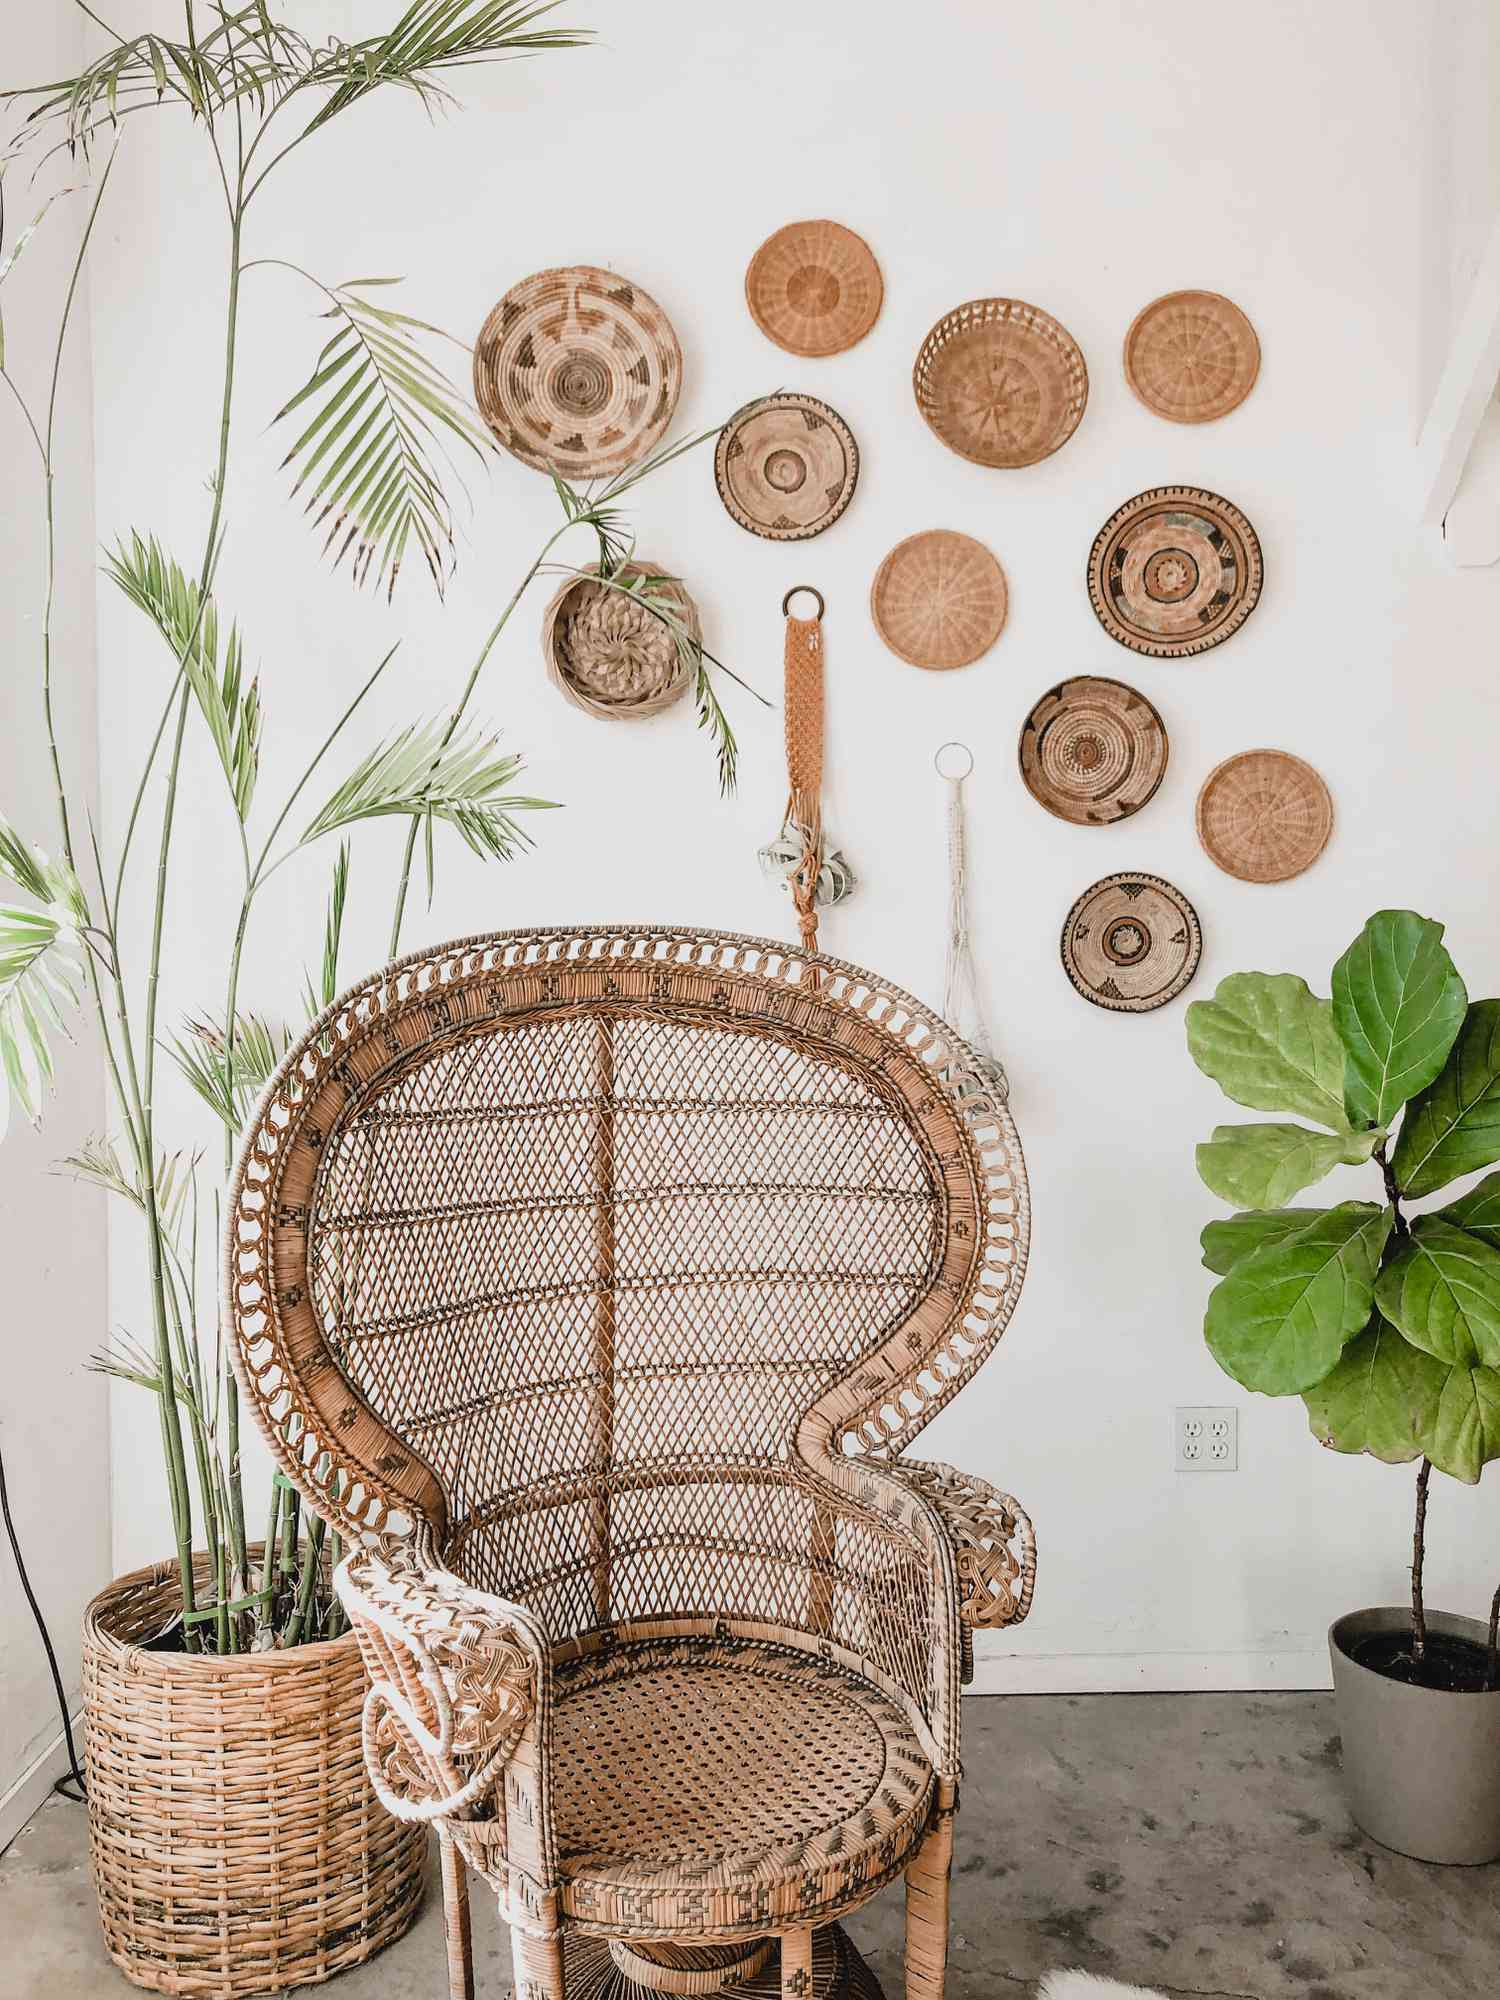 silla pavo real de mimbre marrón y otros adornos marrones con plantas verdes